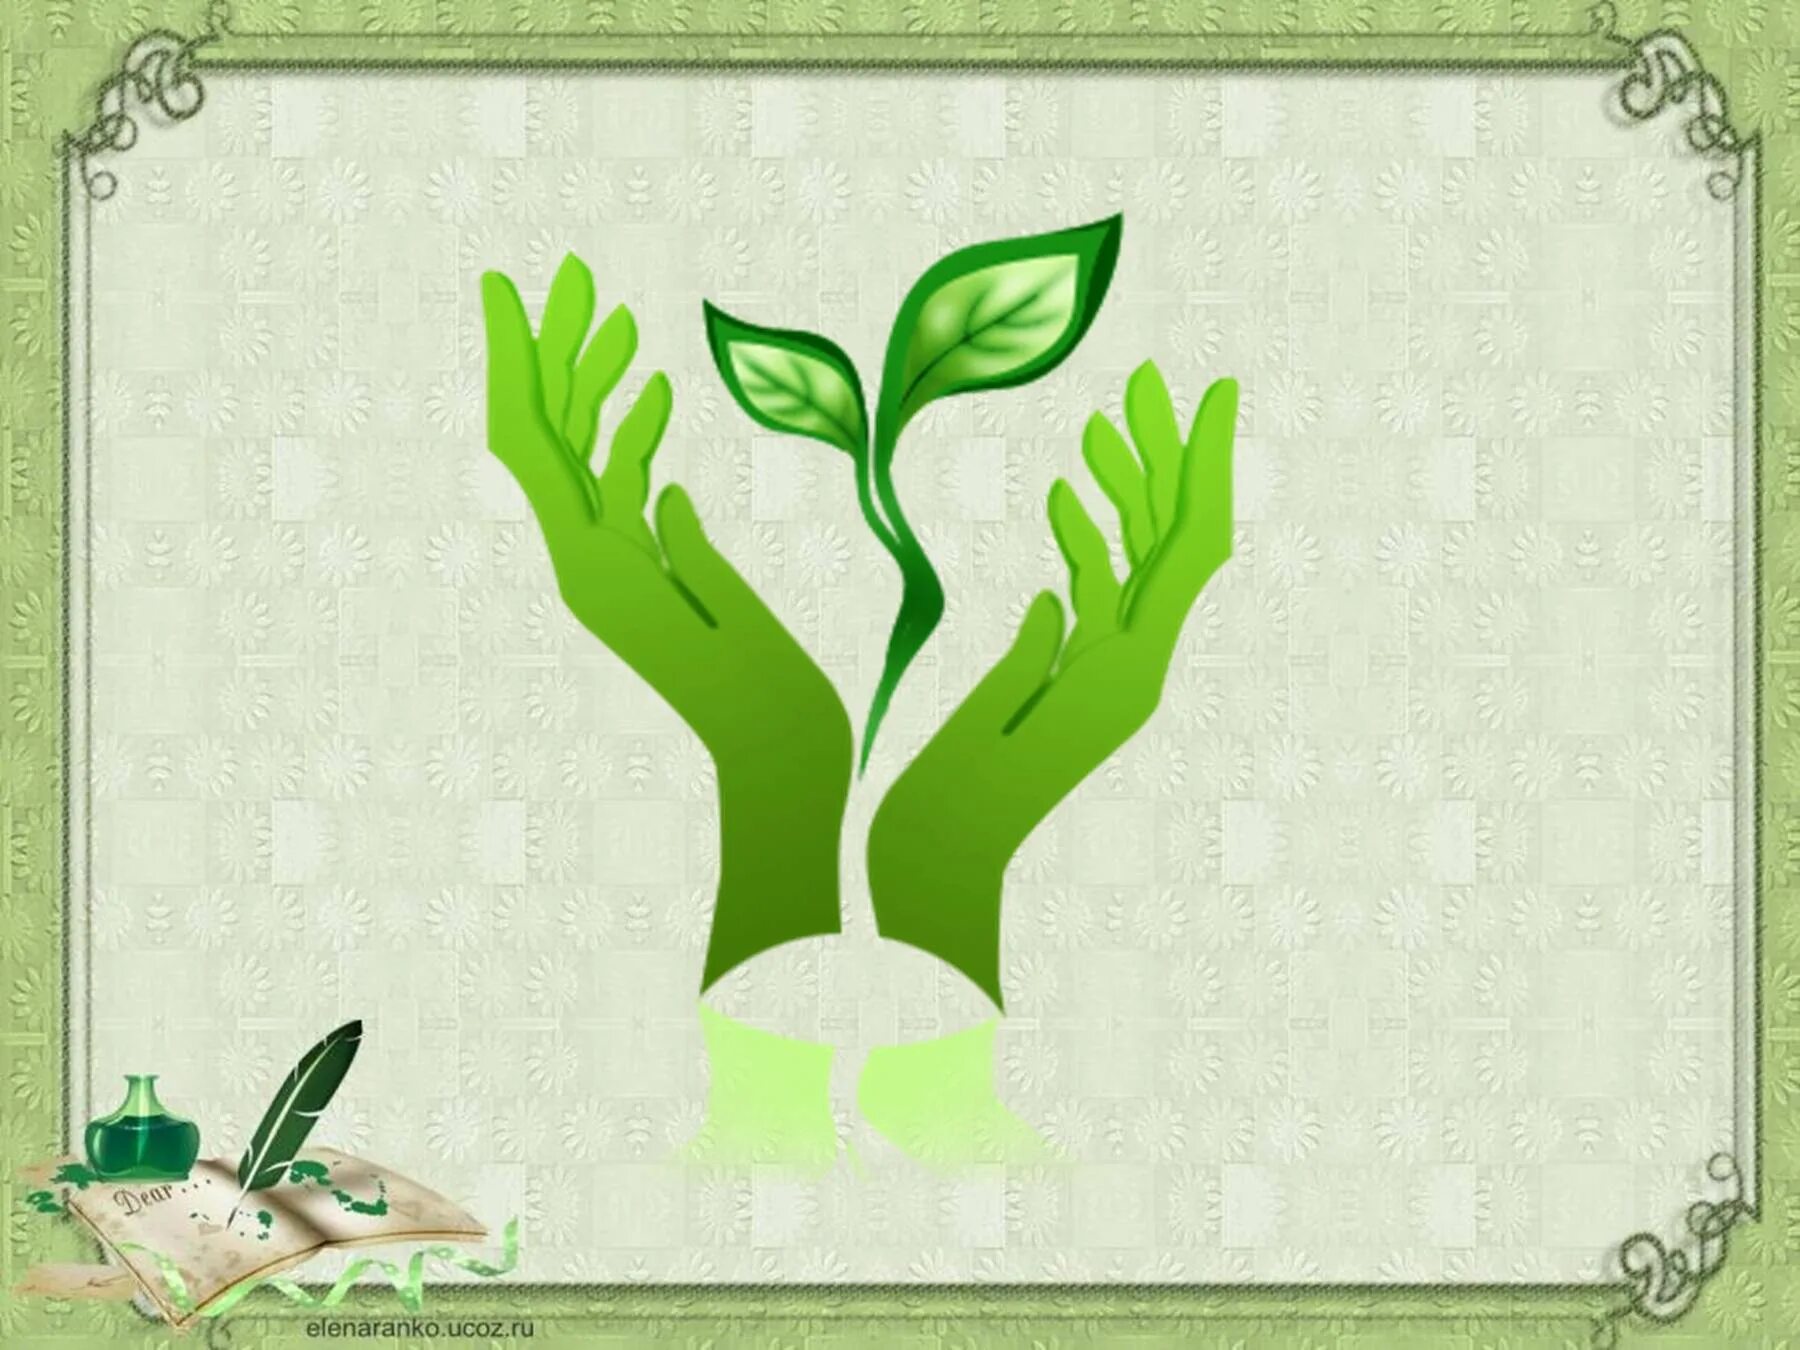 Окружающая среда и здоровый образ жизни. Эмблема экологии. Защита природы. Логотип защиты природы. Символ экологии.